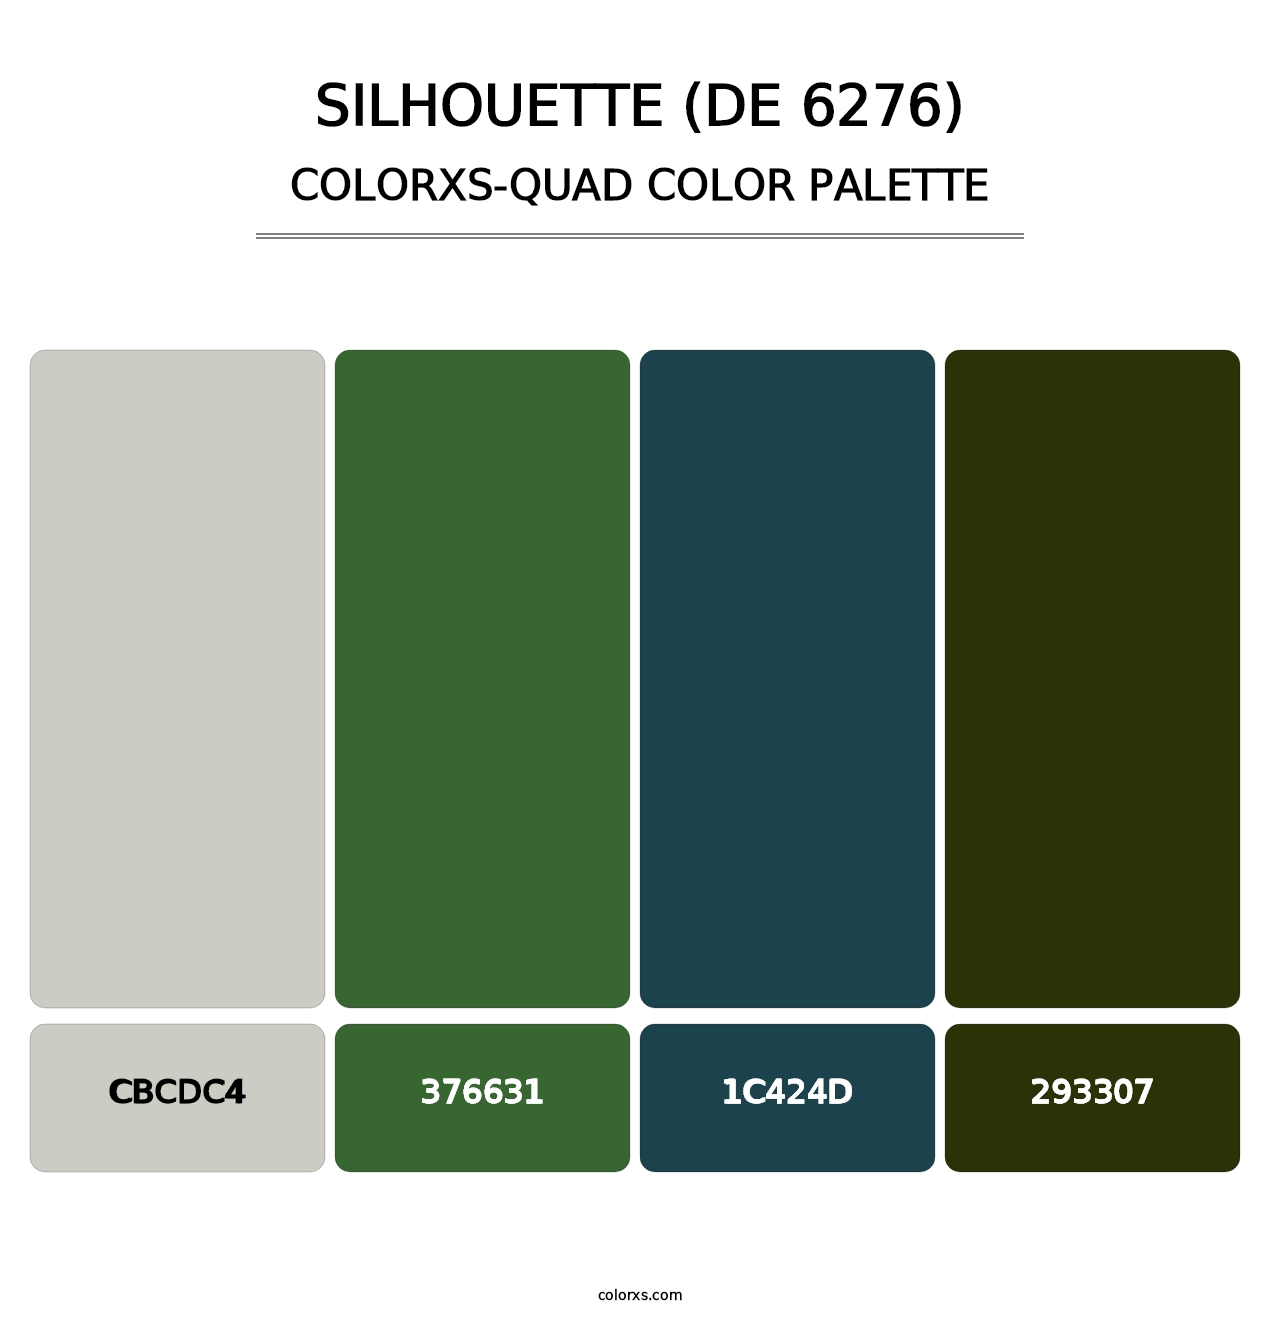 Silhouette (DE 6276) - Colorxs Quad Palette